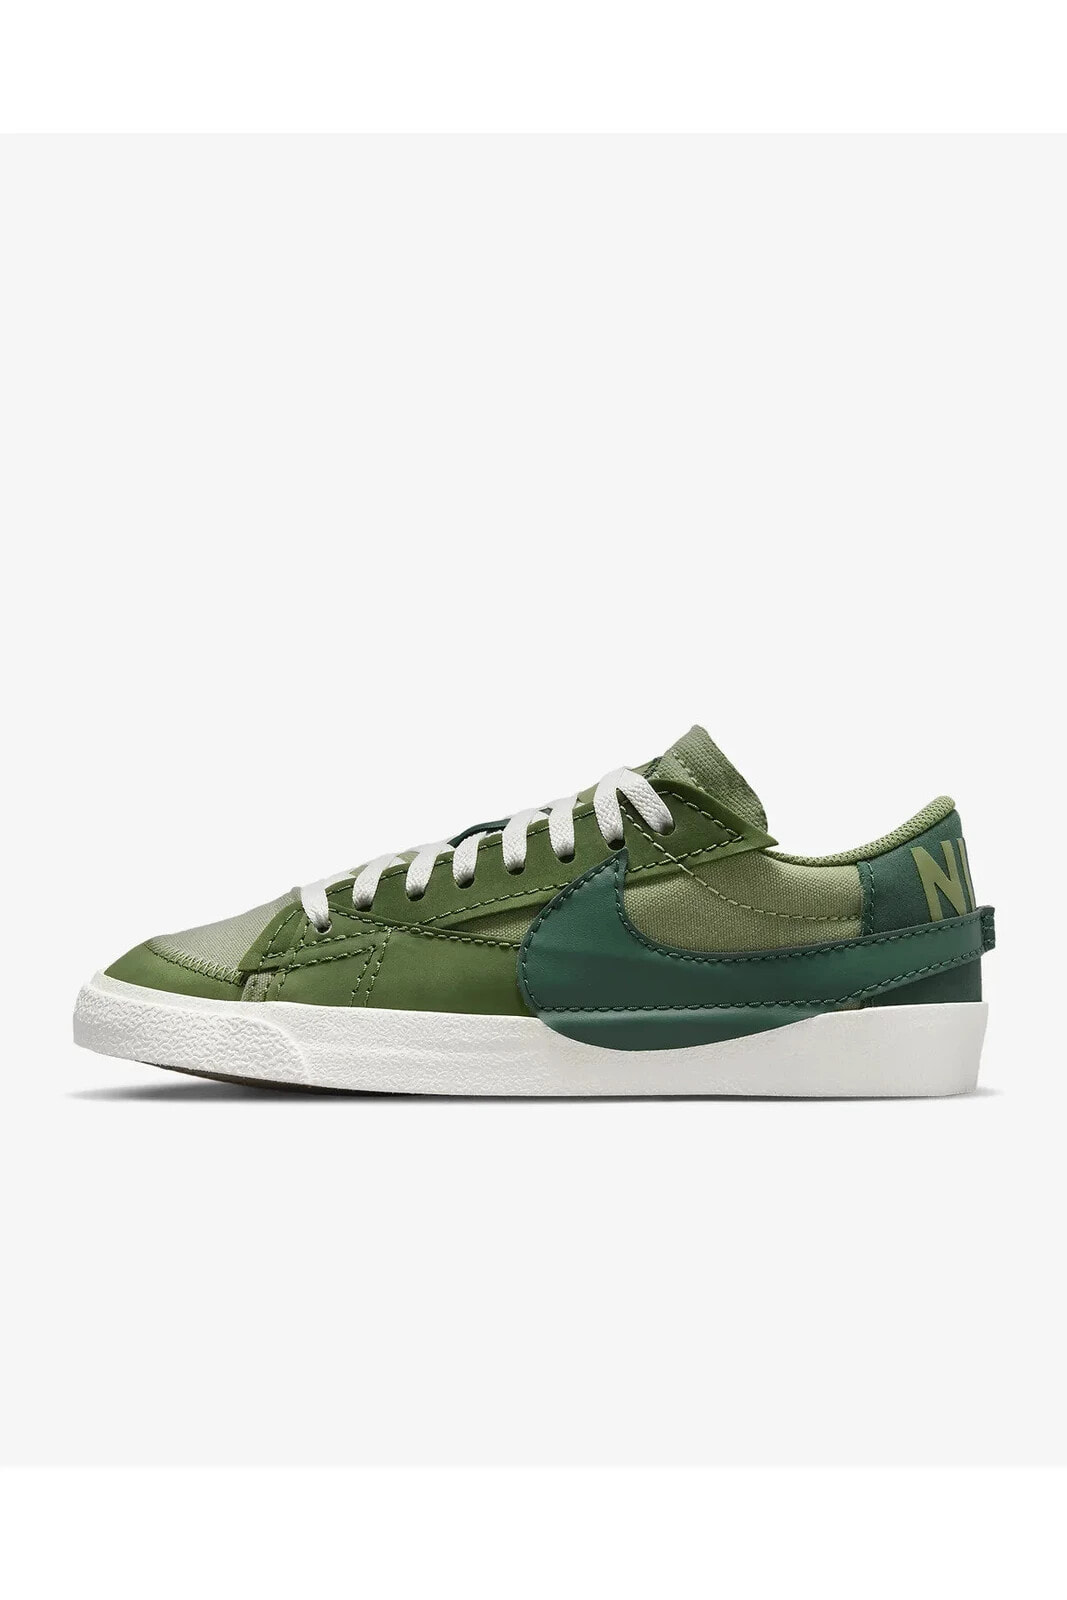 Blazer Low '77 Jumbo Erkek Yeşil Sneaker